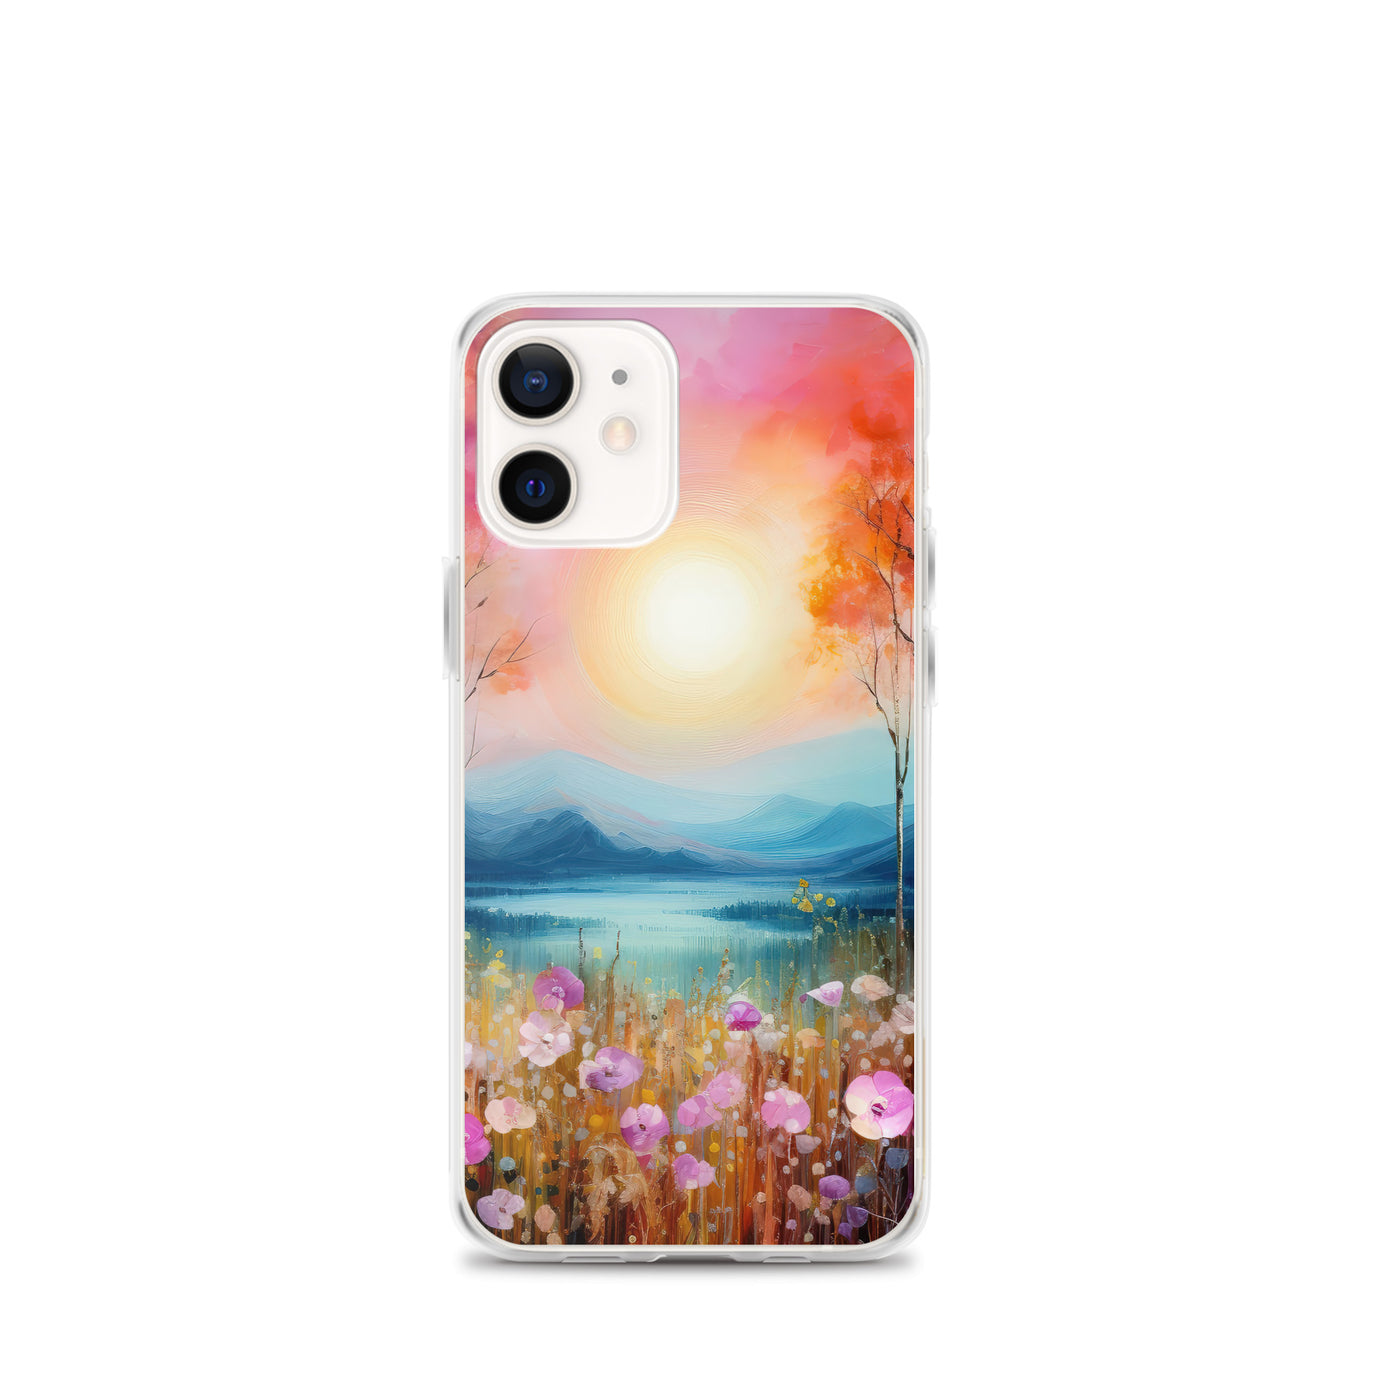 Berge, See, pinke Bäume und Blumen - Malerei - iPhone Schutzhülle (durchsichtig) berge xxx iPhone 12 mini